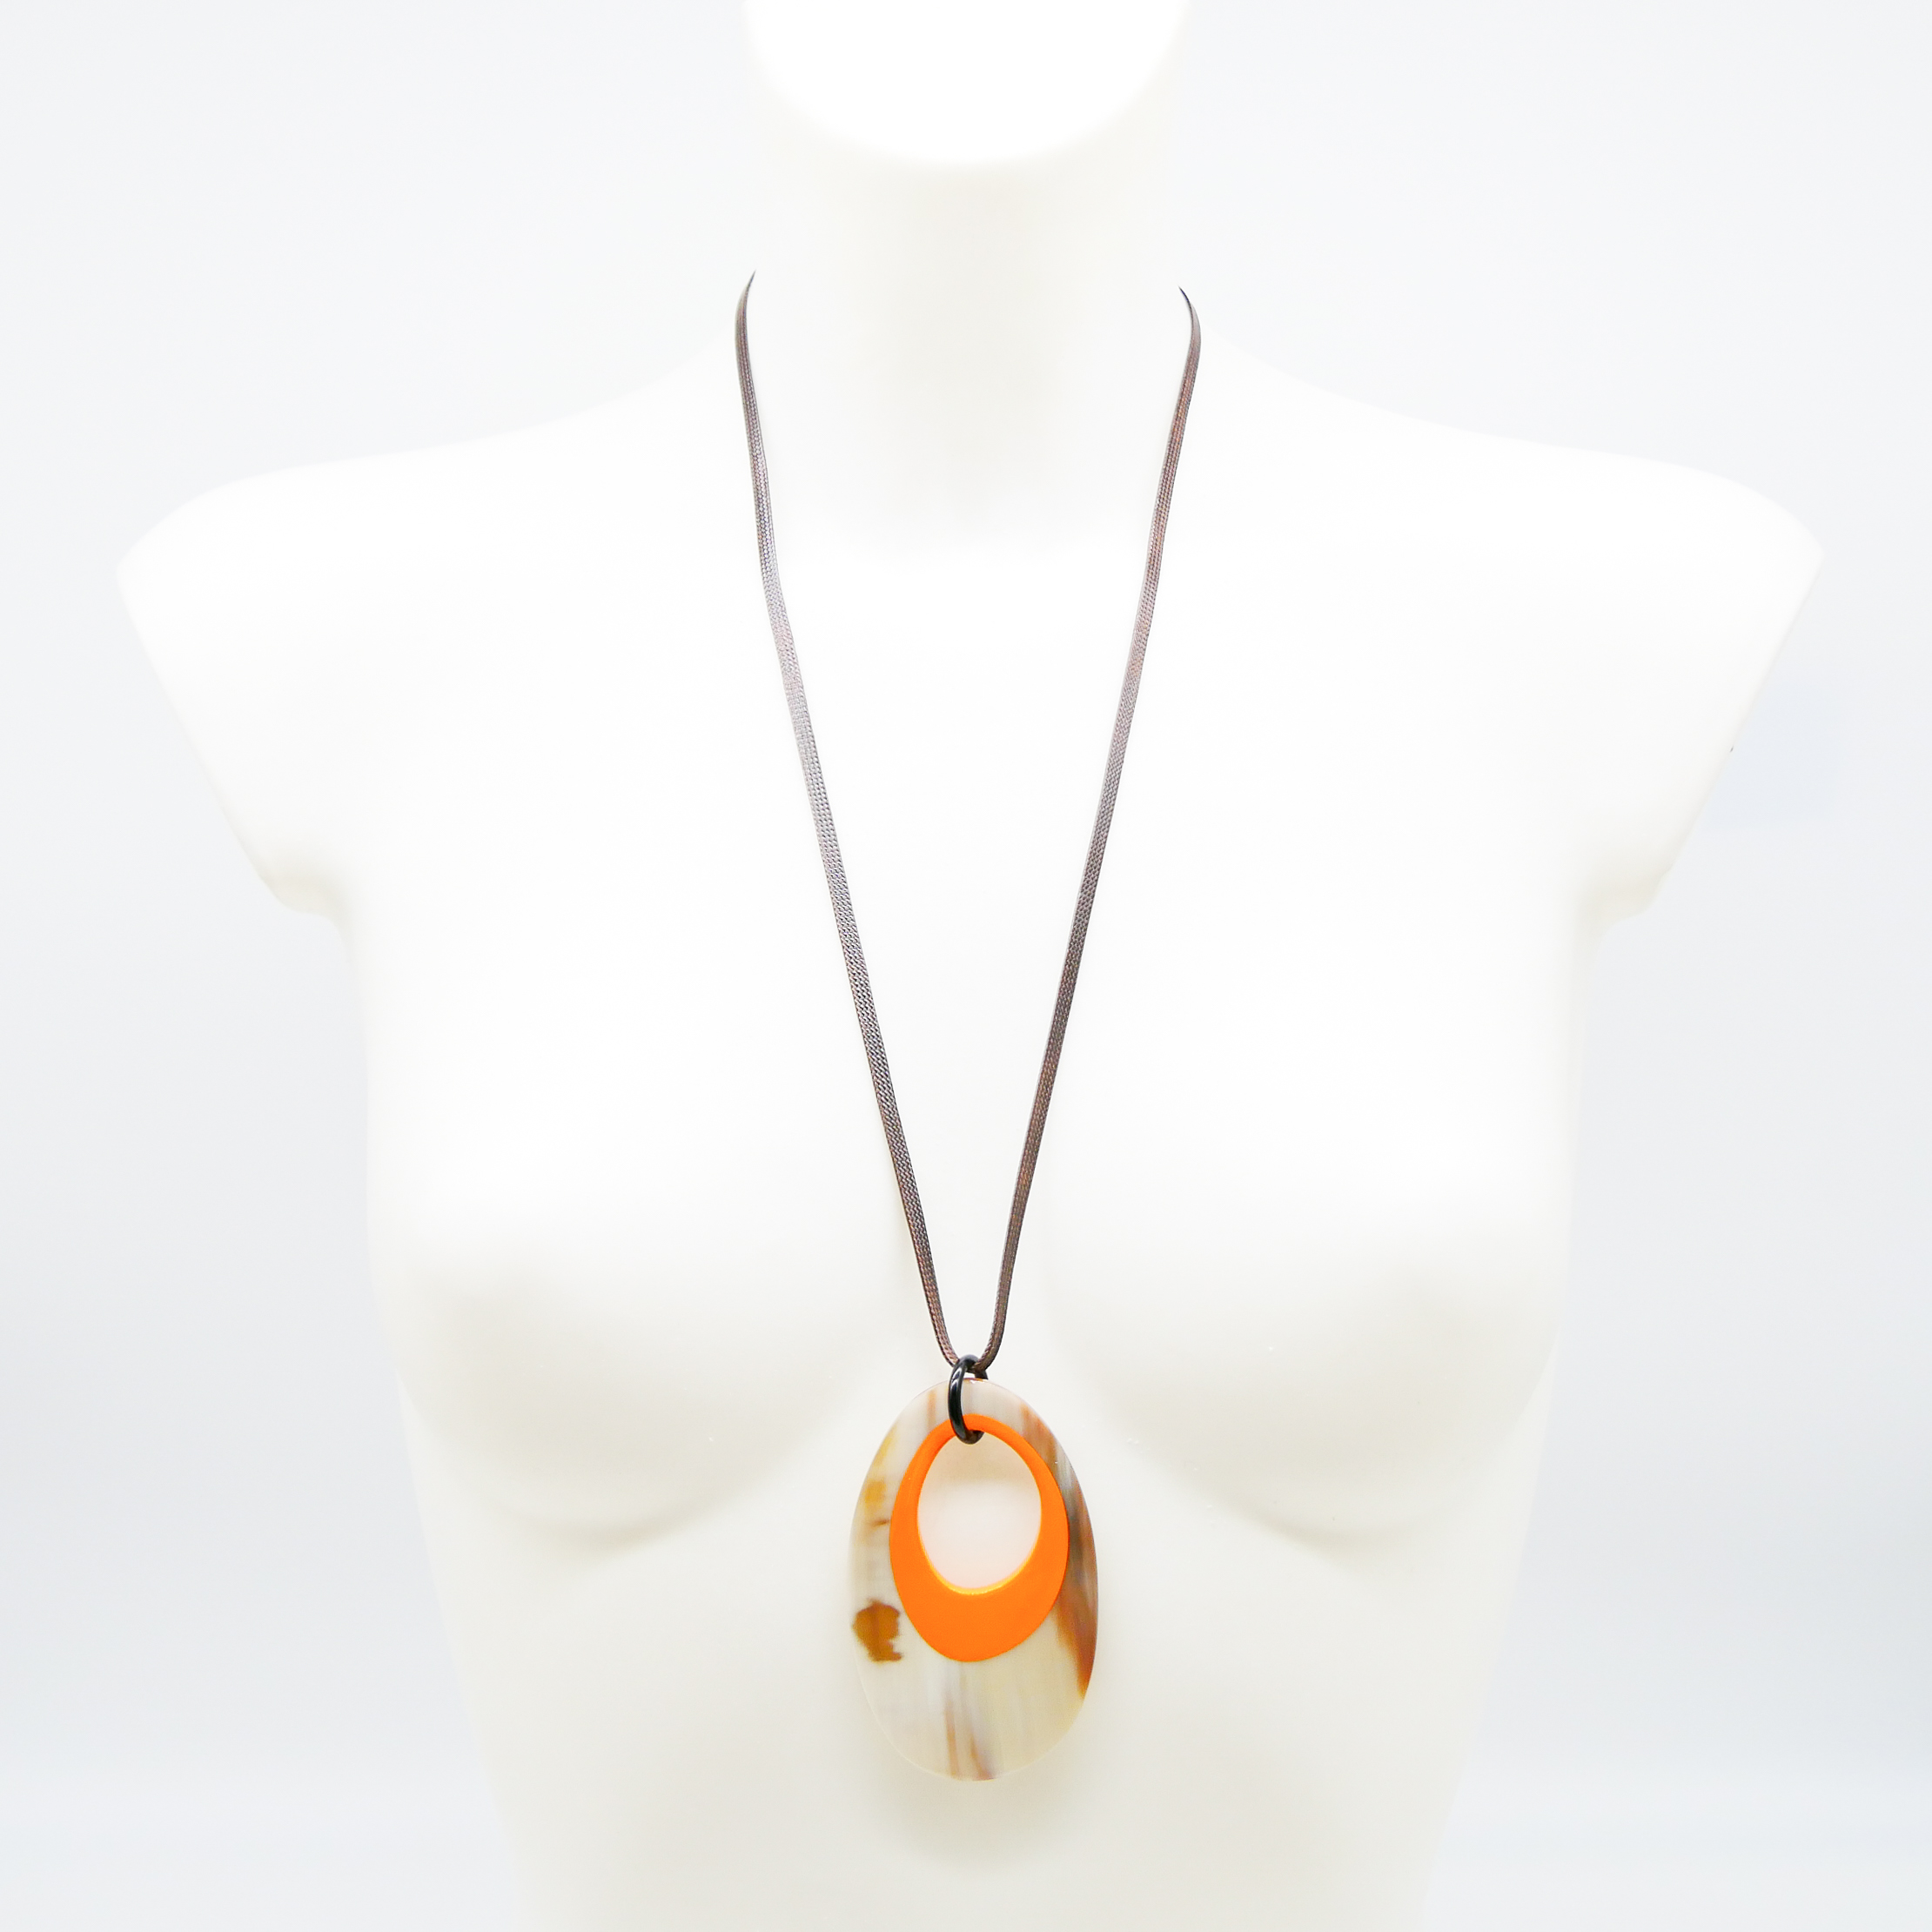 "Craft Art", Hornkette, lang, ovaler Anhänger "Spiegelei" mit orangenem Lack 